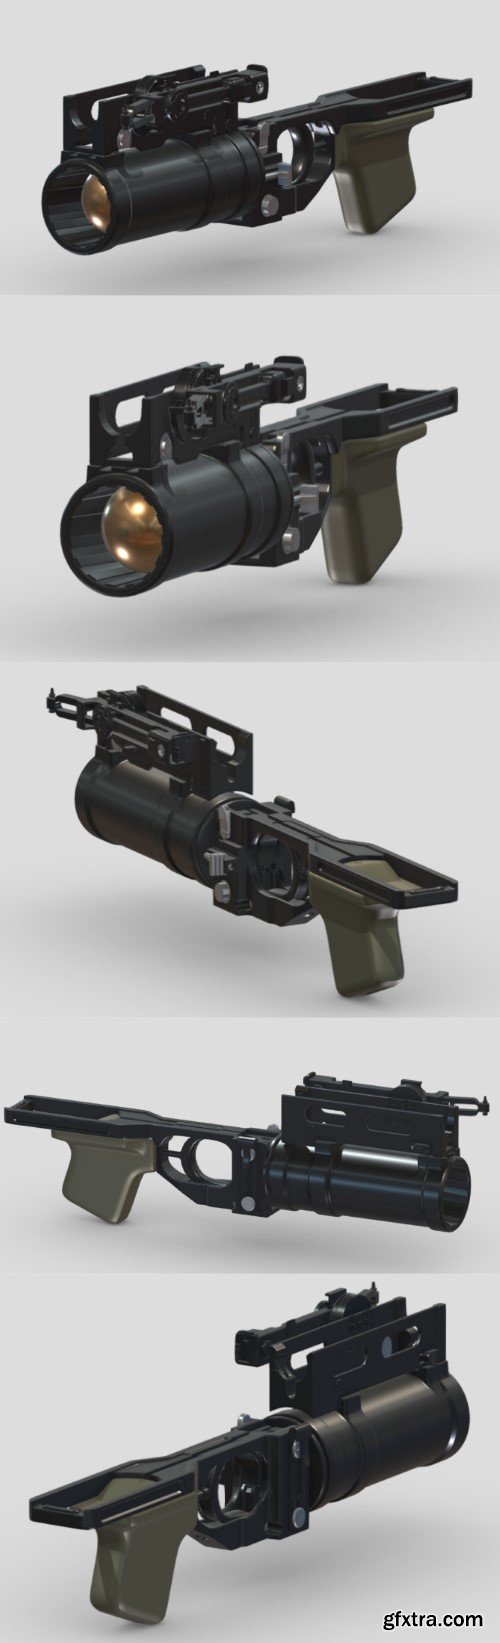 GP-25 Grenade Launcher 3D